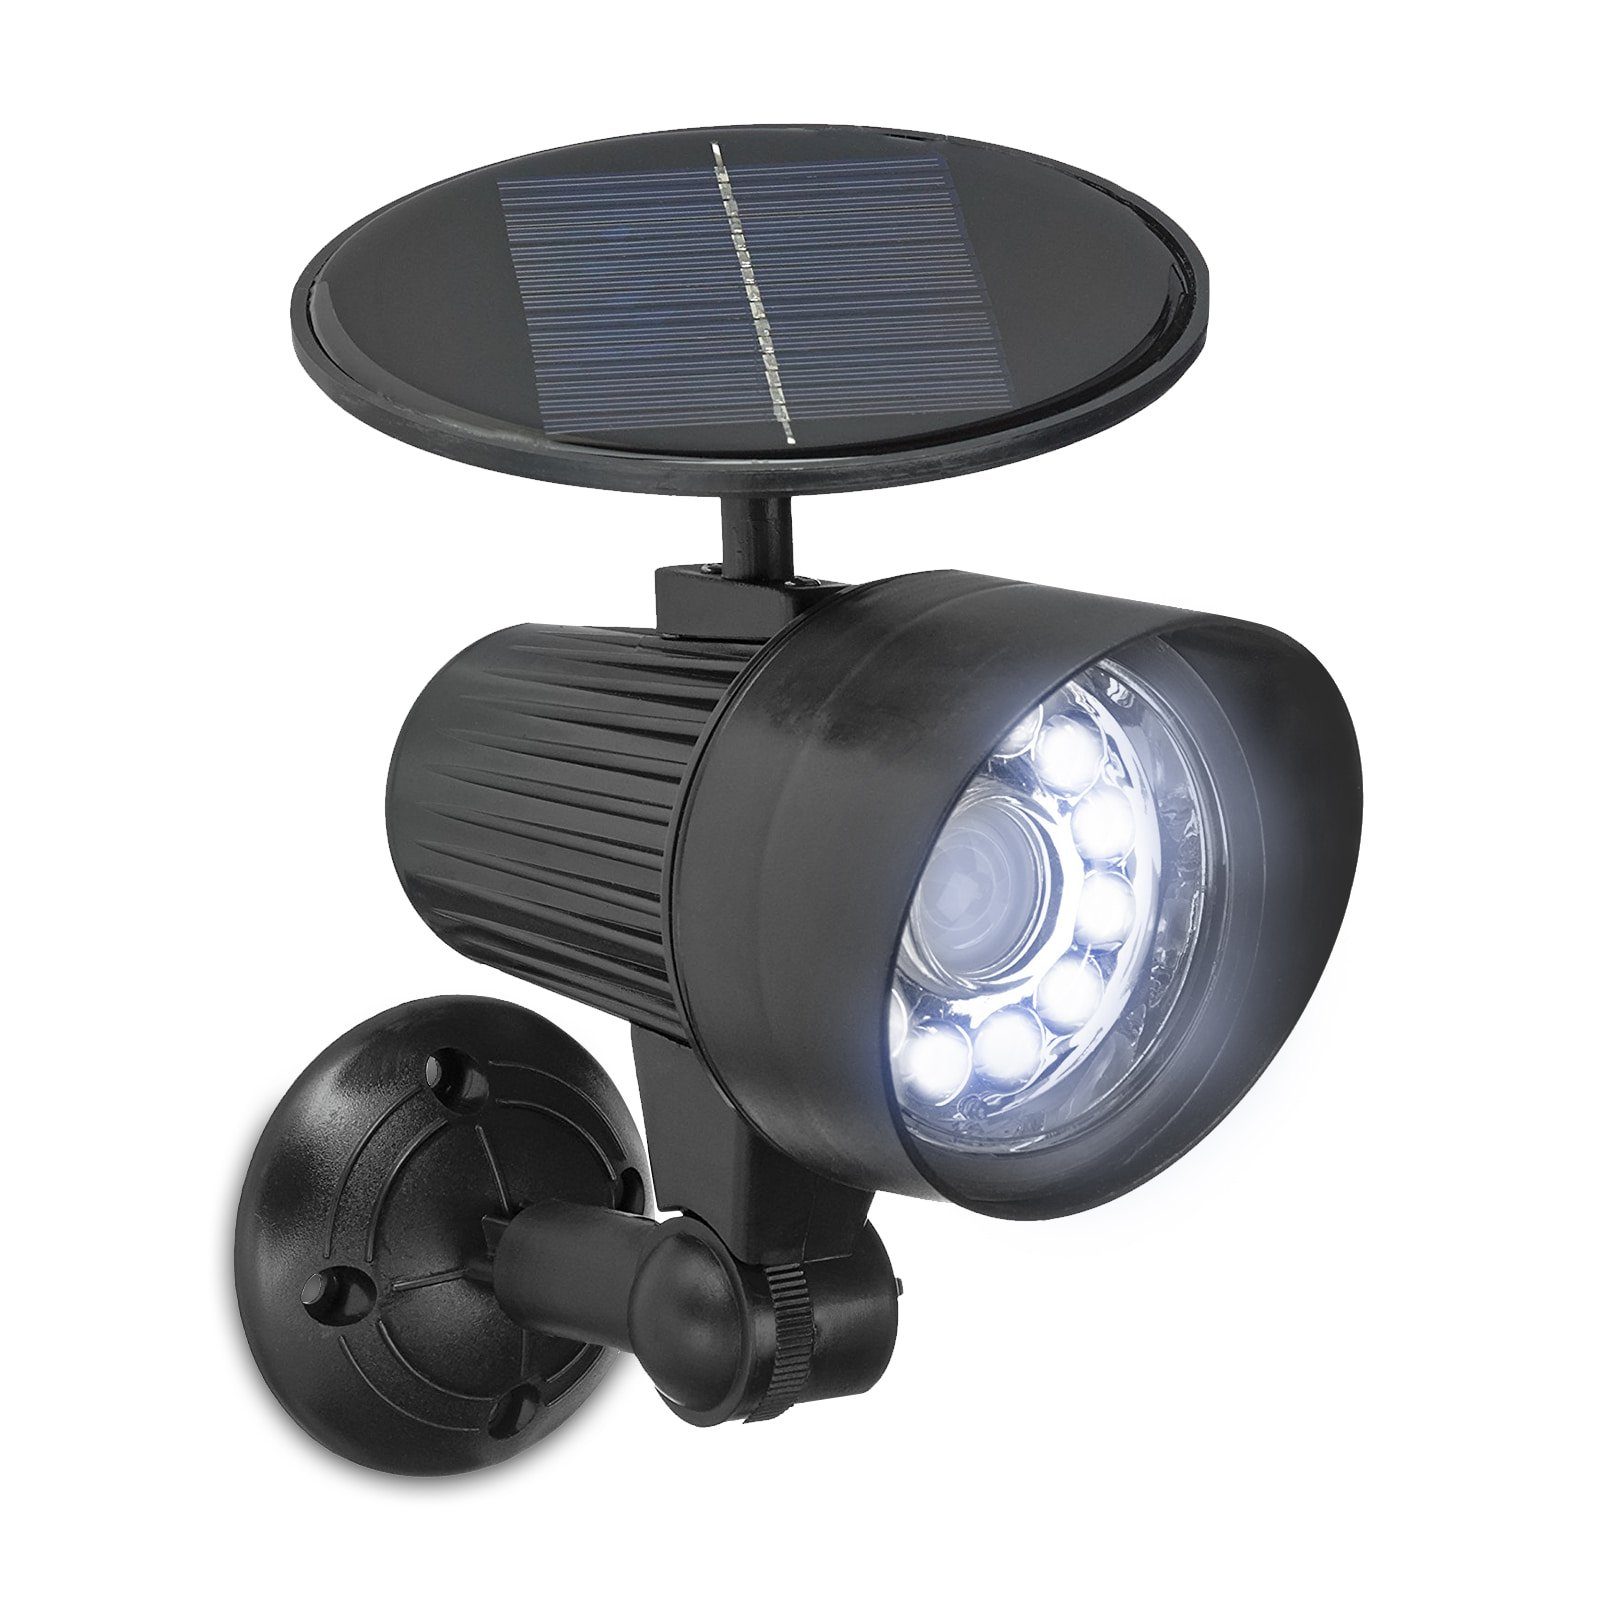 Plus integriert, Flutlicht Solar Strahler EASYmaxx Überwachungskamera-Attrappe, LED Wandleuchte 06839 Strahler, mit Außen-Wandleuchte LED Security Kaltweiß, Bewegungsmelder, fest